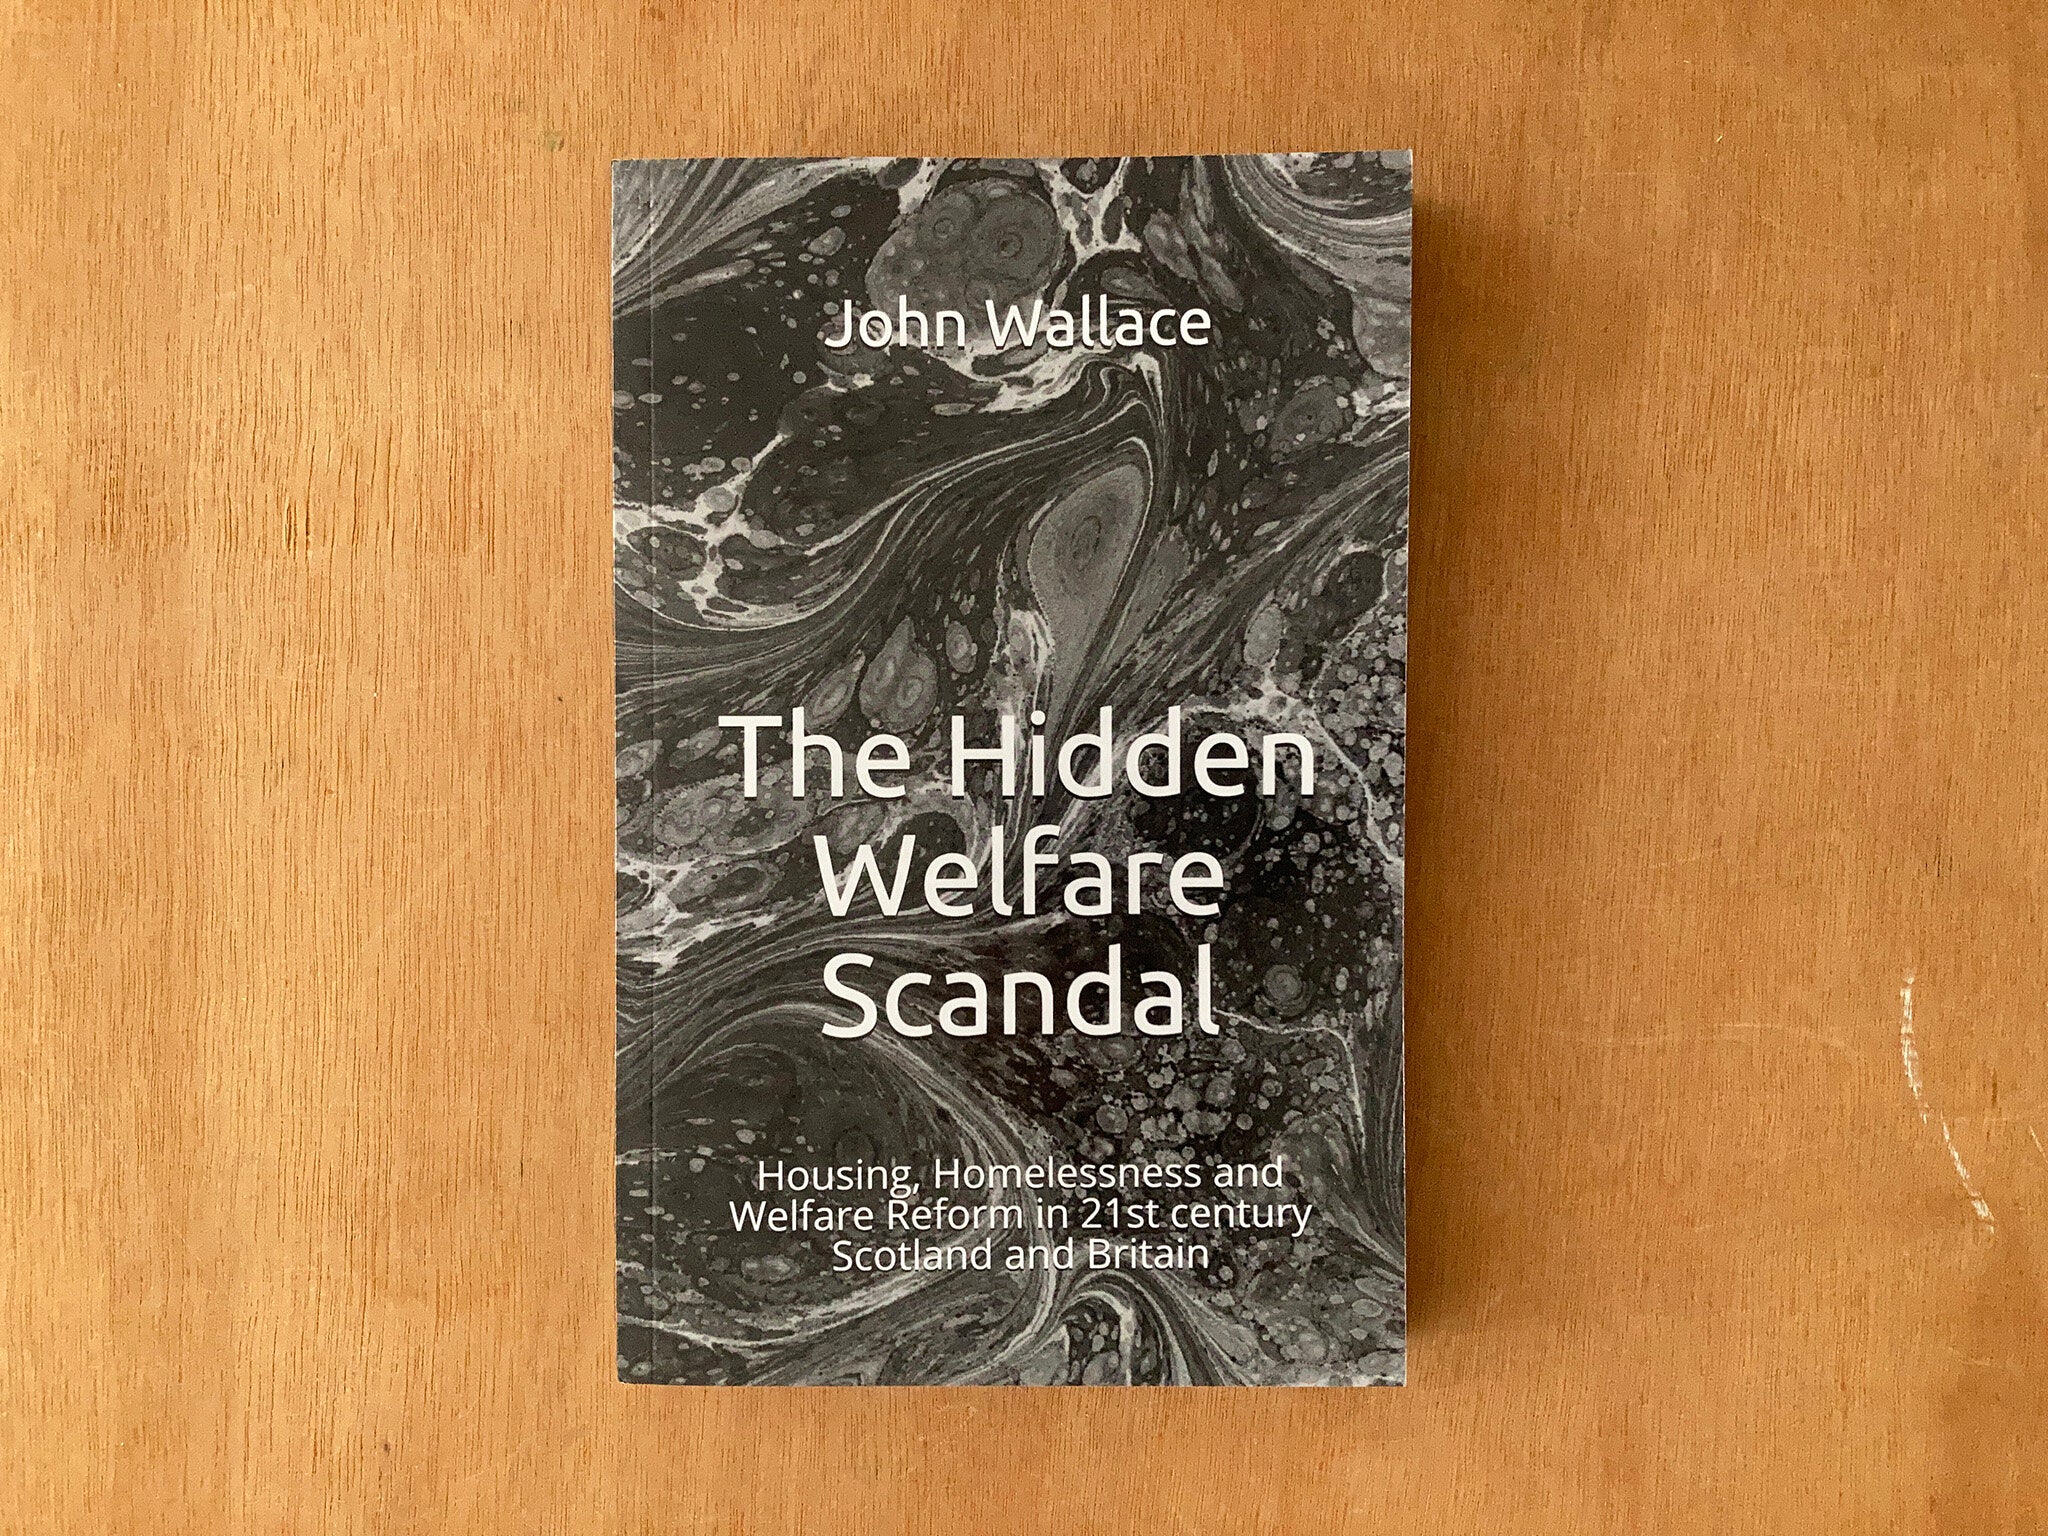 THE HIDDEN WELFARE SCANDAL by John Wallace